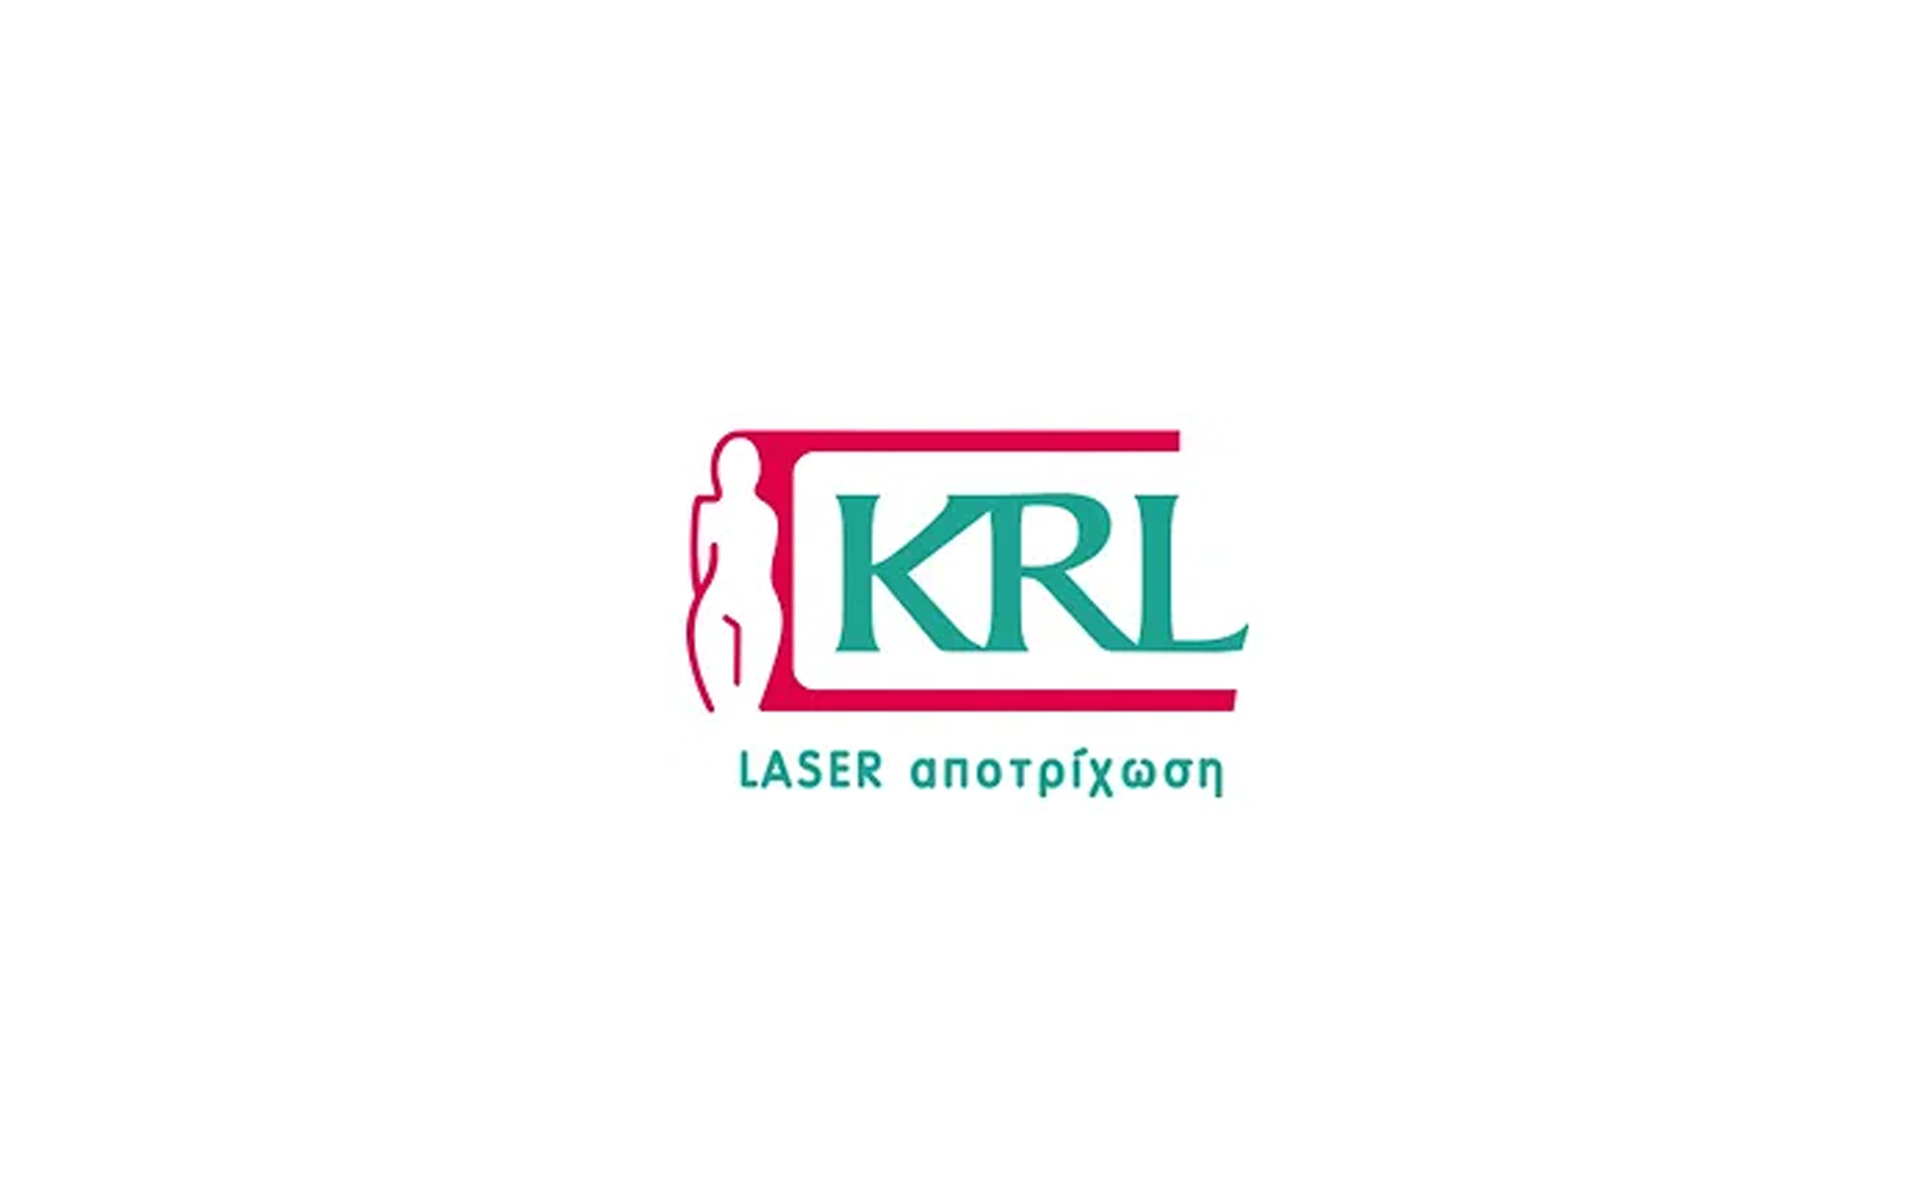 KRL Medical